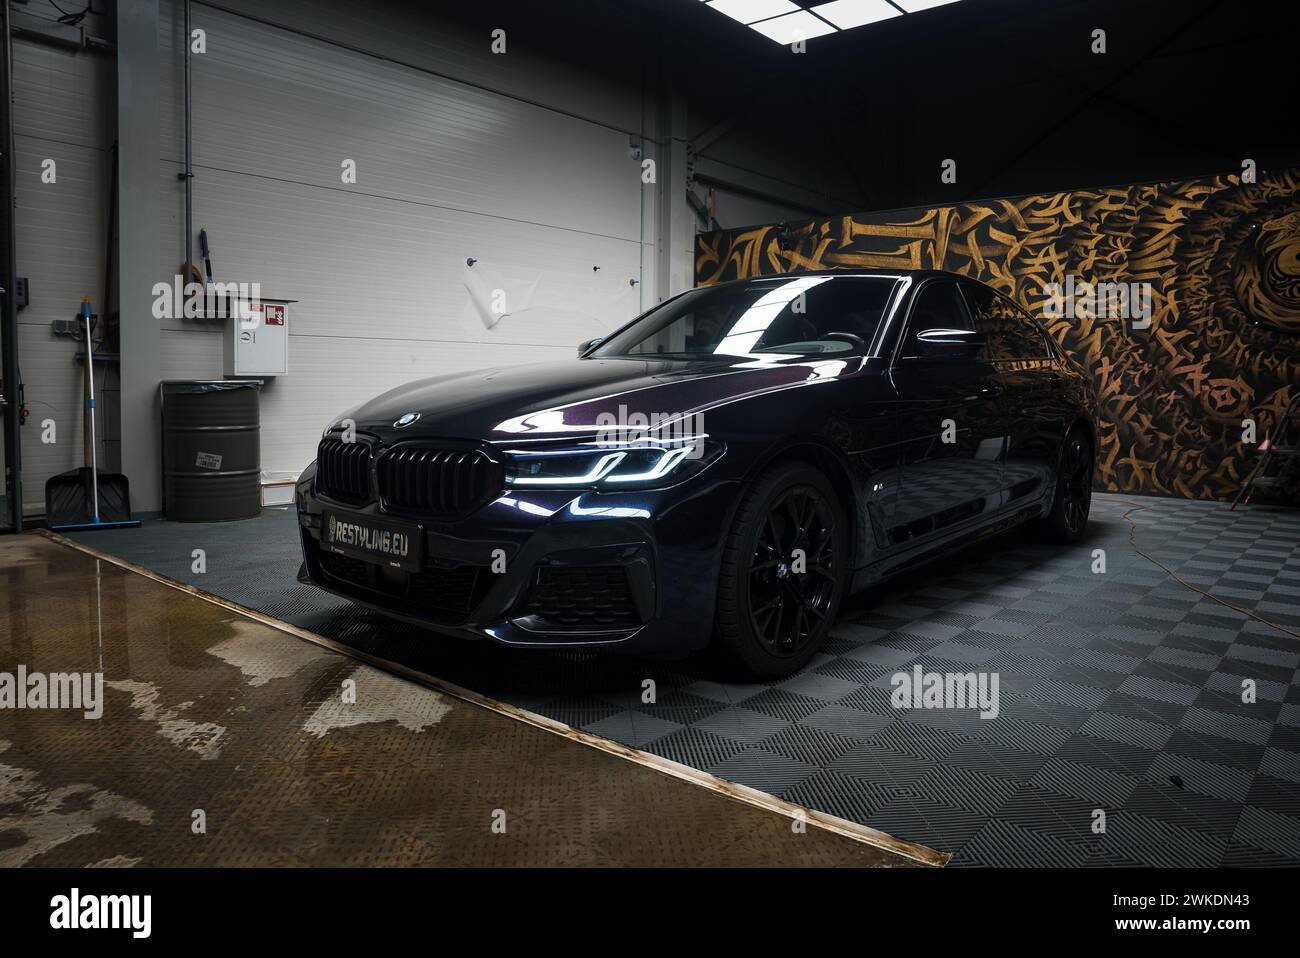 Modello BMW ad alte prestazioni in Urban Tuning Garage con decorazioni Graffiti Foto Stock